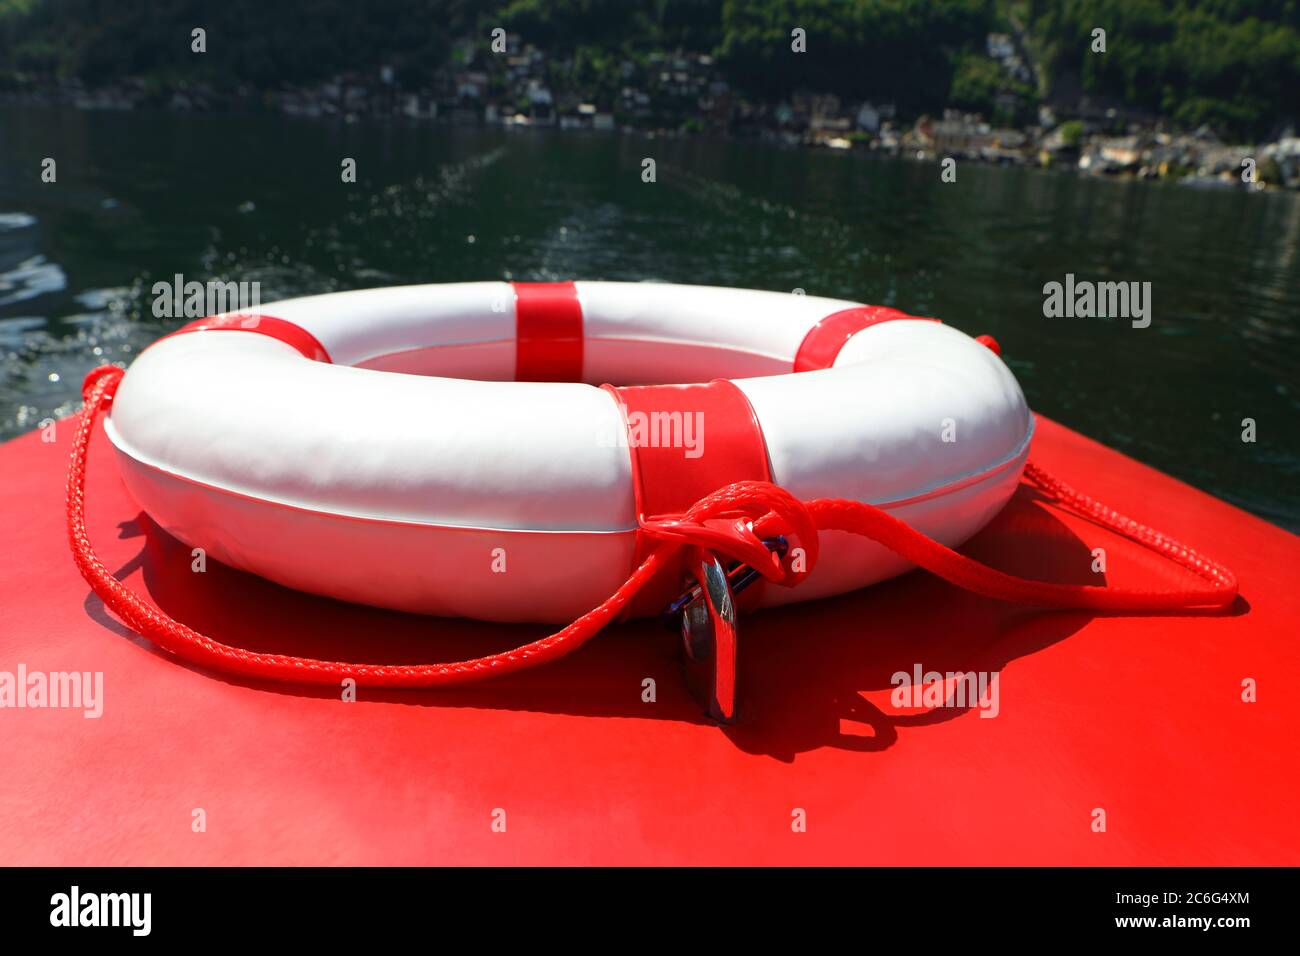 Sicherheitsschild, Rettungsring auf dem roten Boot im grünen Seenwasser Stockfoto